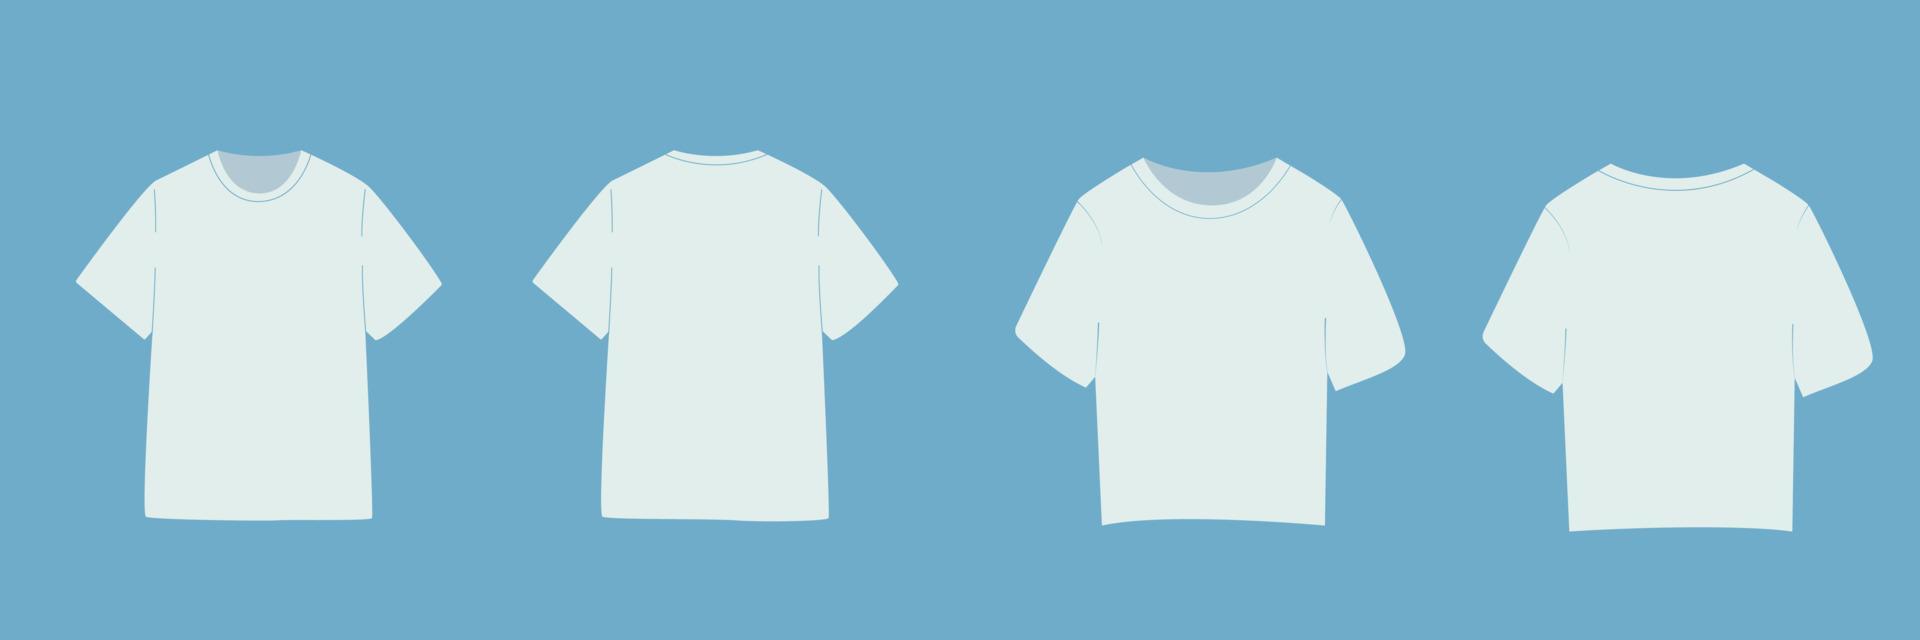 t-shirt con manica corta per uomo e donna. mock up di base nella vista anteriore e posteriore. abbigliamento modello su sfondo blu. illustrazione vettoriale